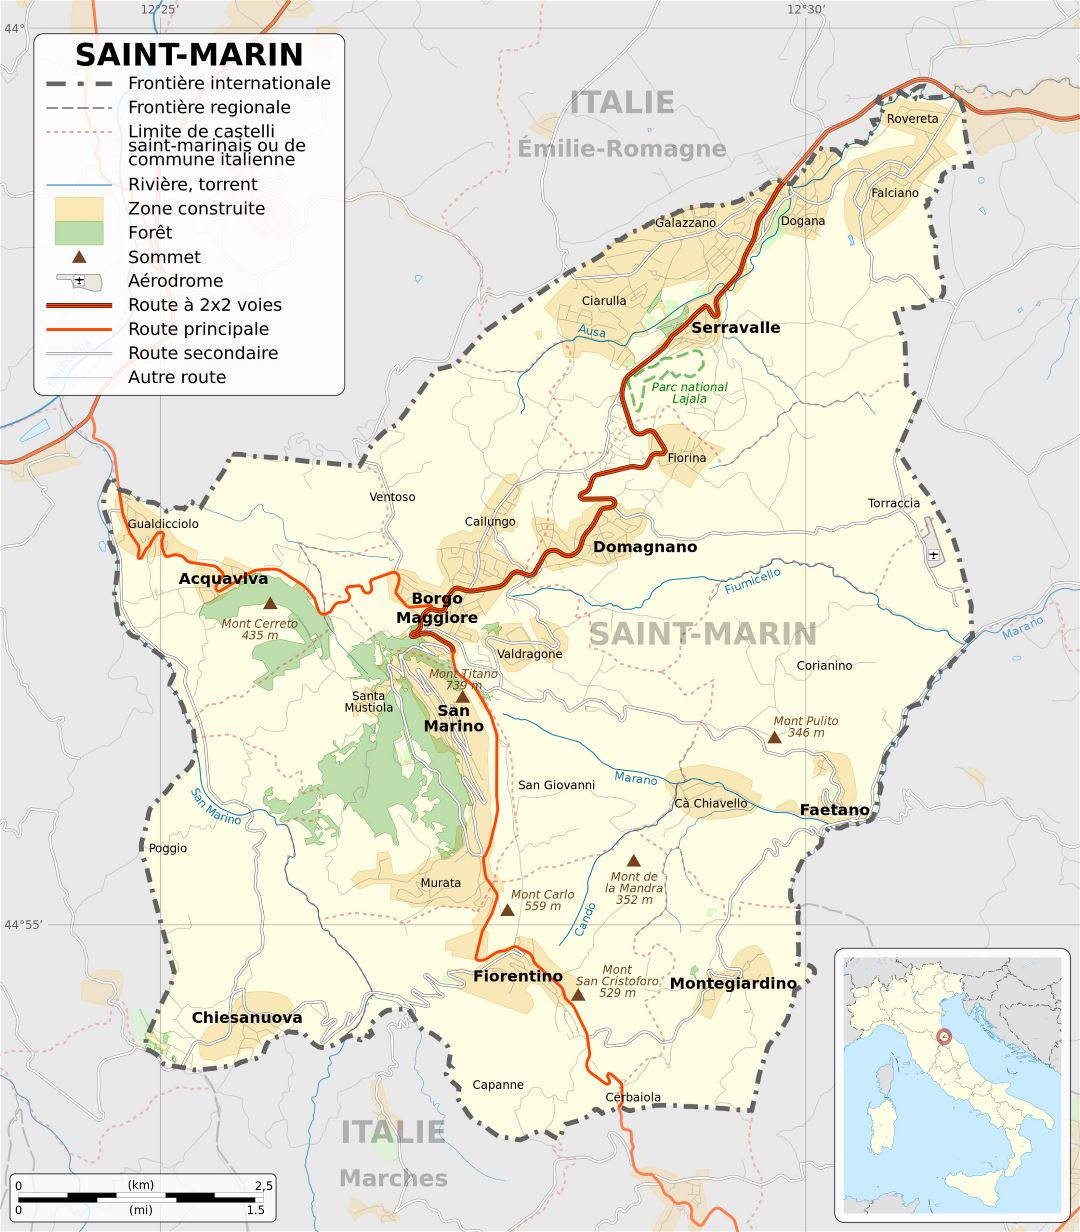 Grande detallado mapa político de San Marino con carreteras, ciudades y otras marcas en francés